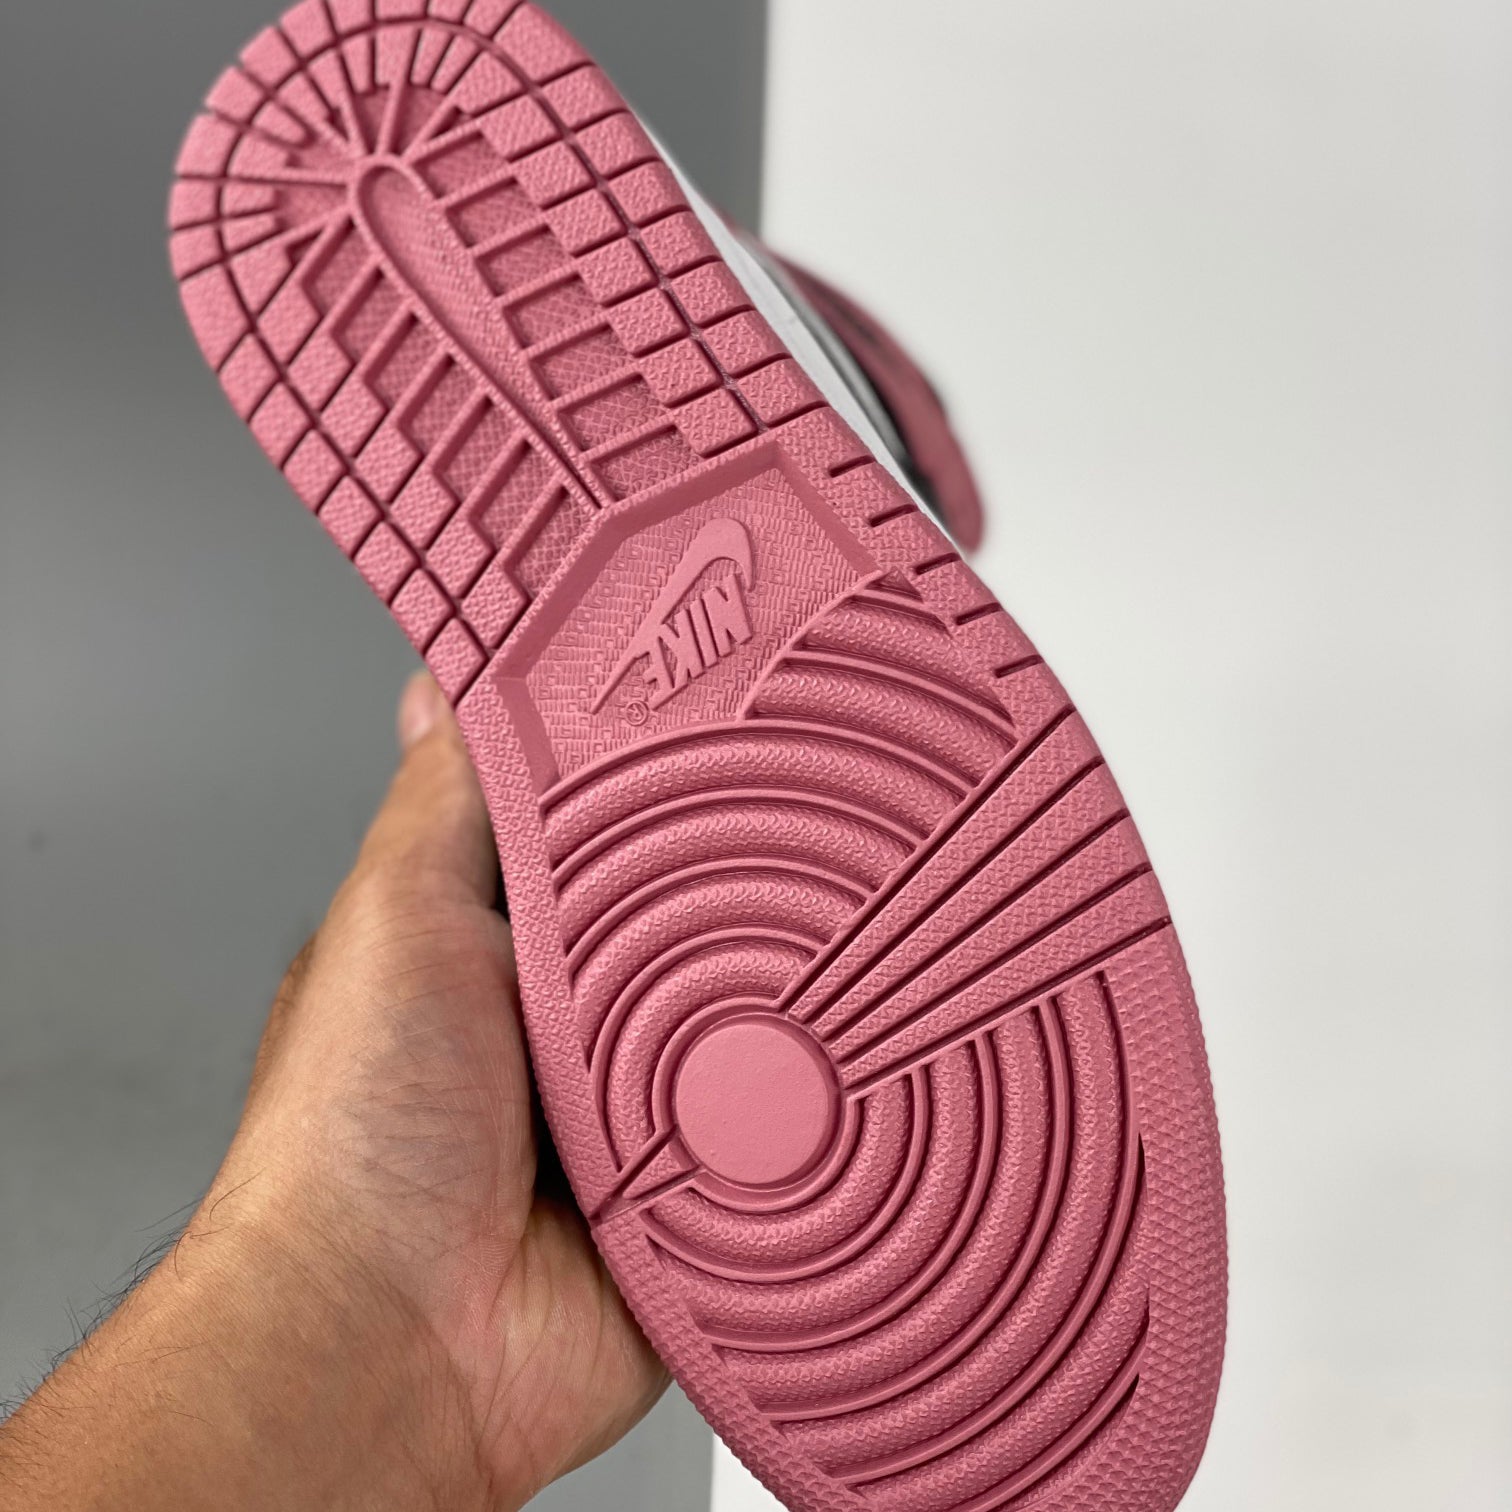 Nike Air Jordan 1 Rust Pink Sneakers Shoes